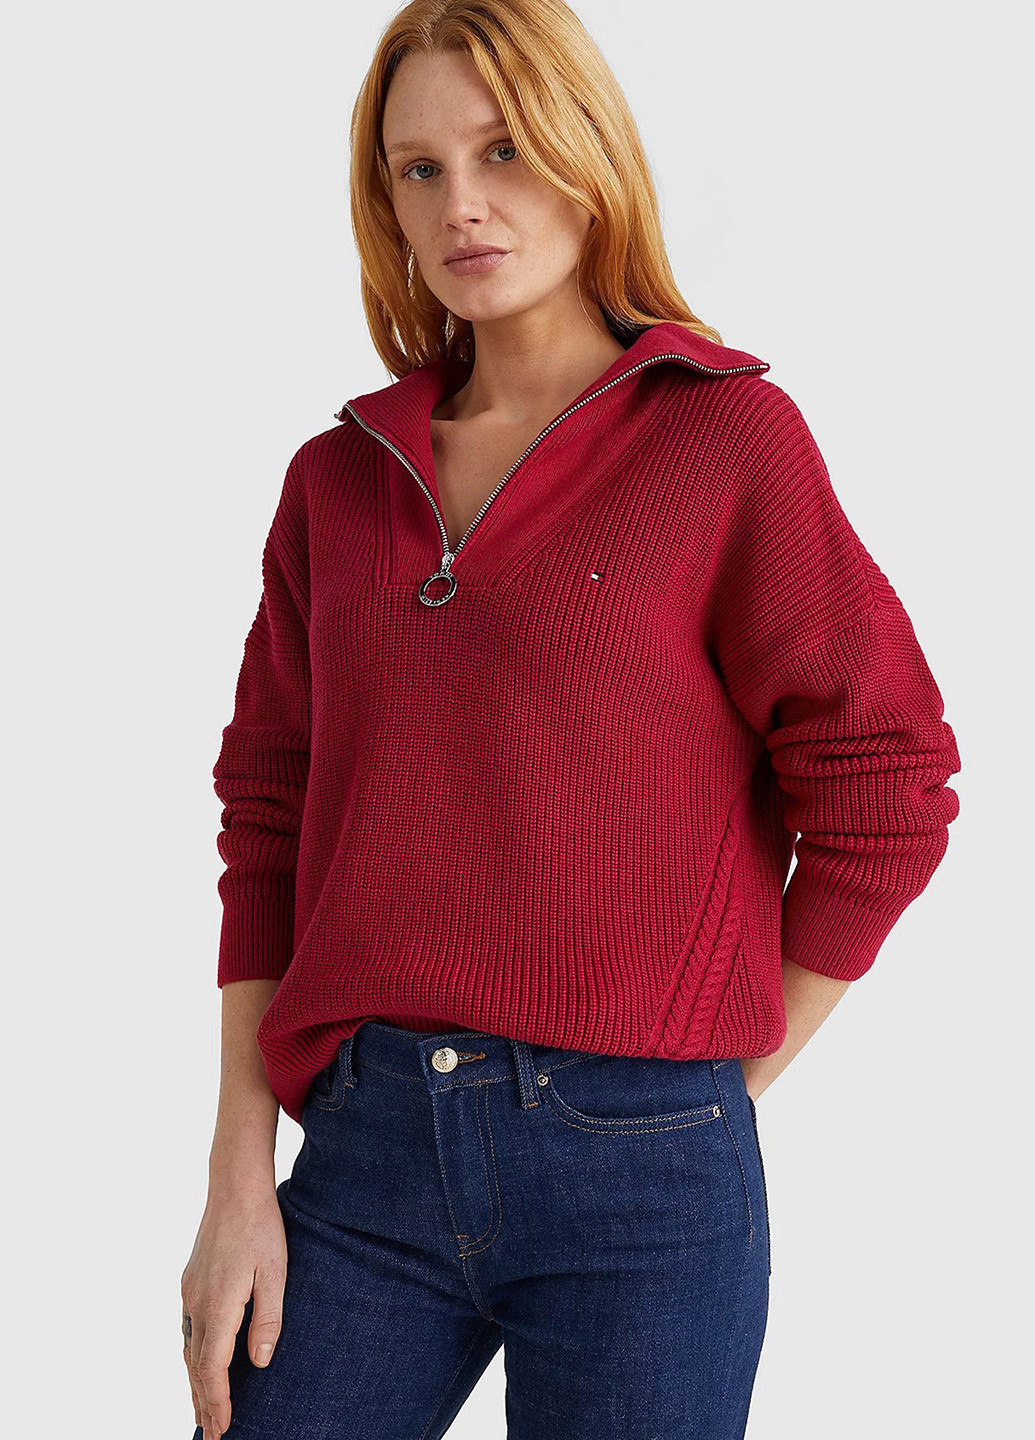 Бордовый зимний свитер Tommy Hilfiger